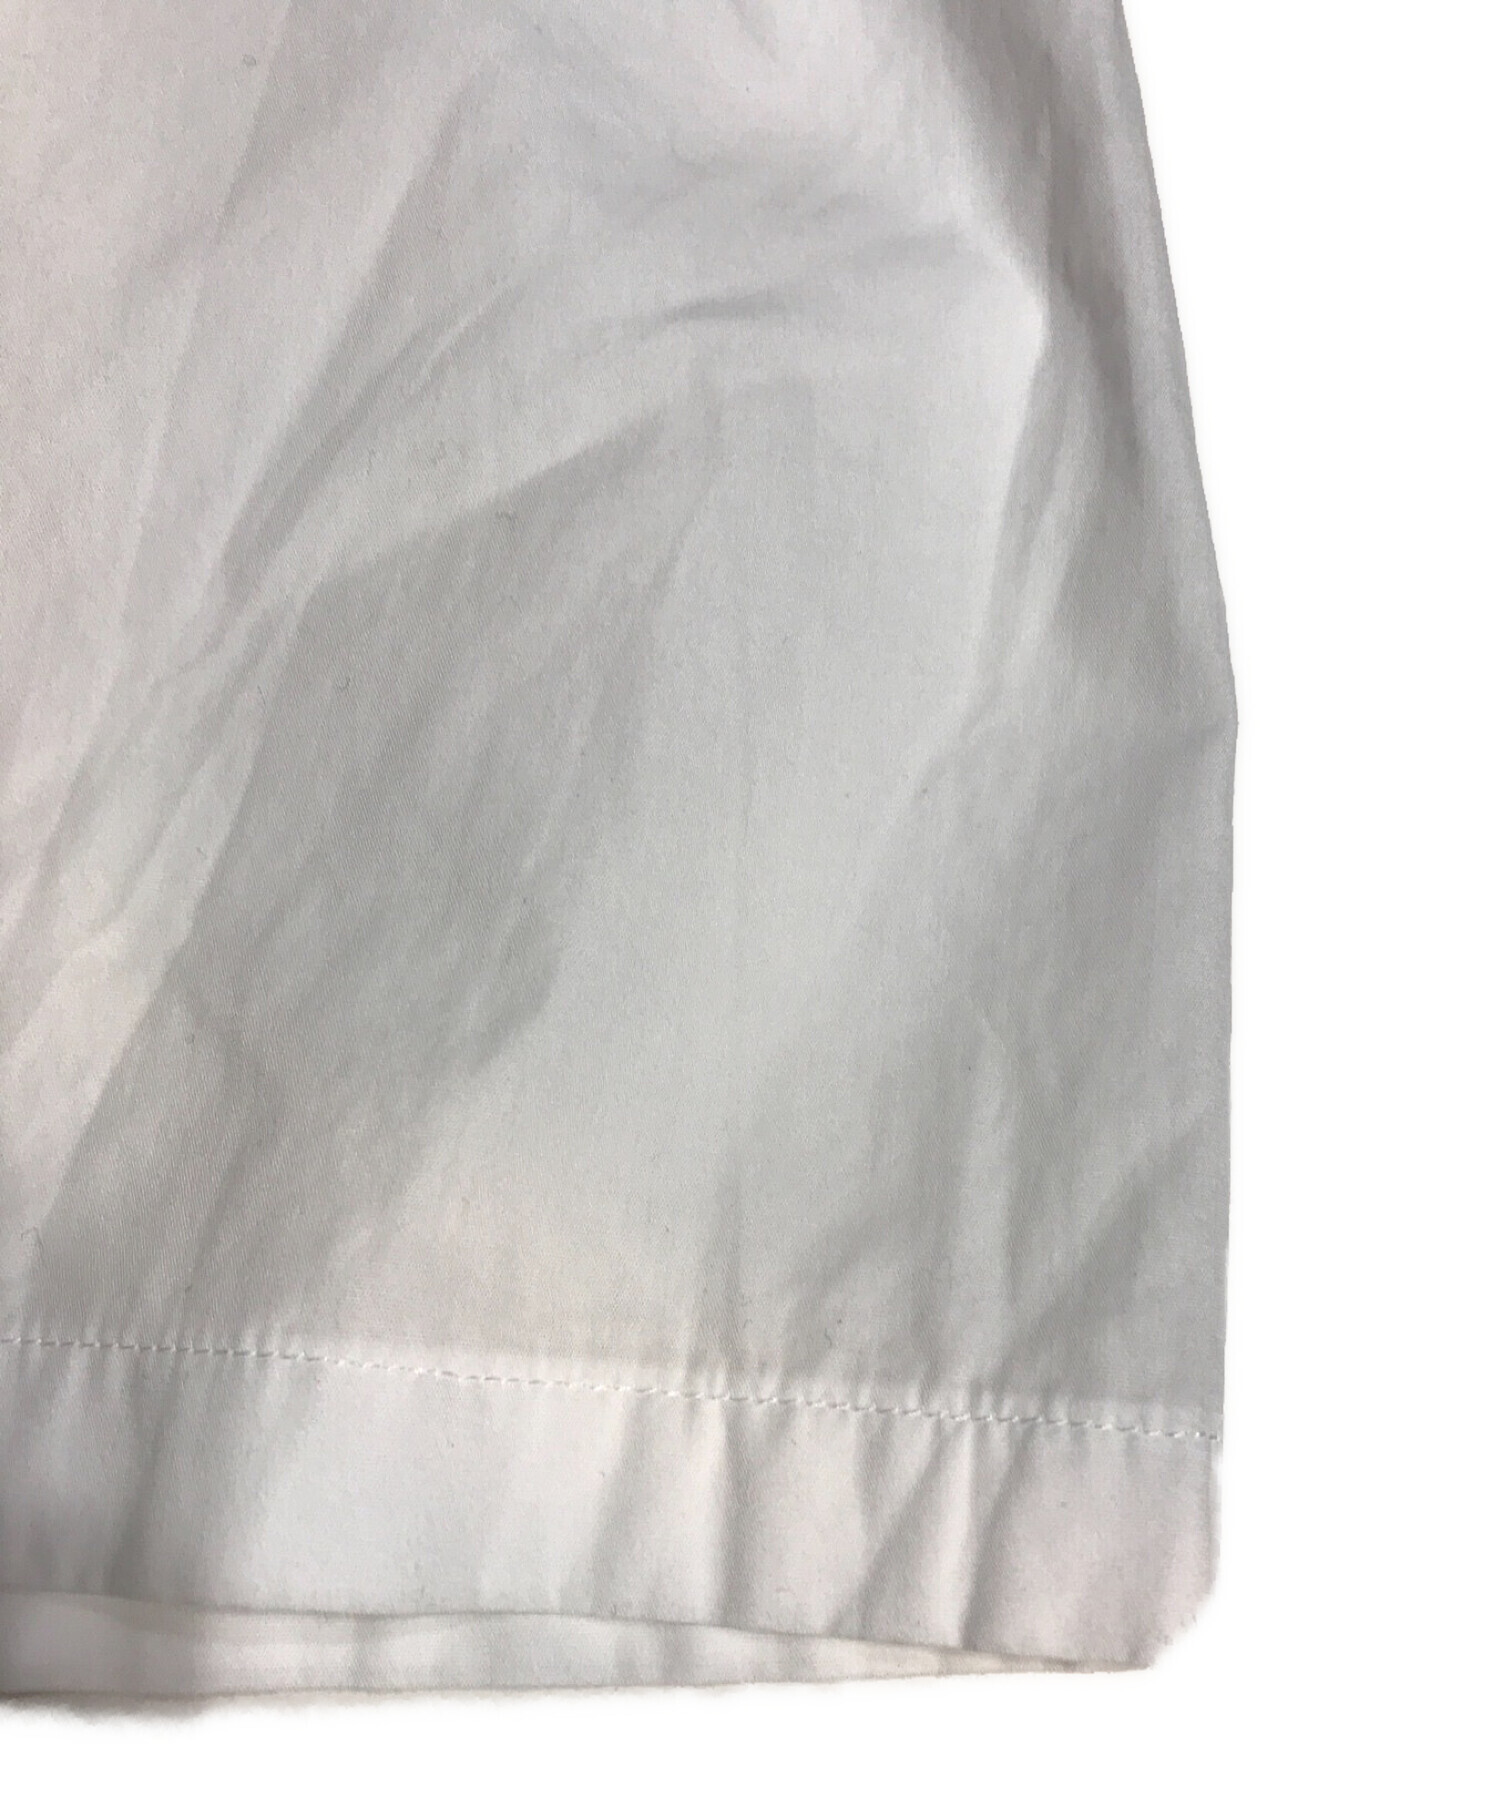 Yohji Yamamoto pour homme (ヨウジヤマモト プールオム) ブロードパッチワークシャツ ホワイト サイズ:2